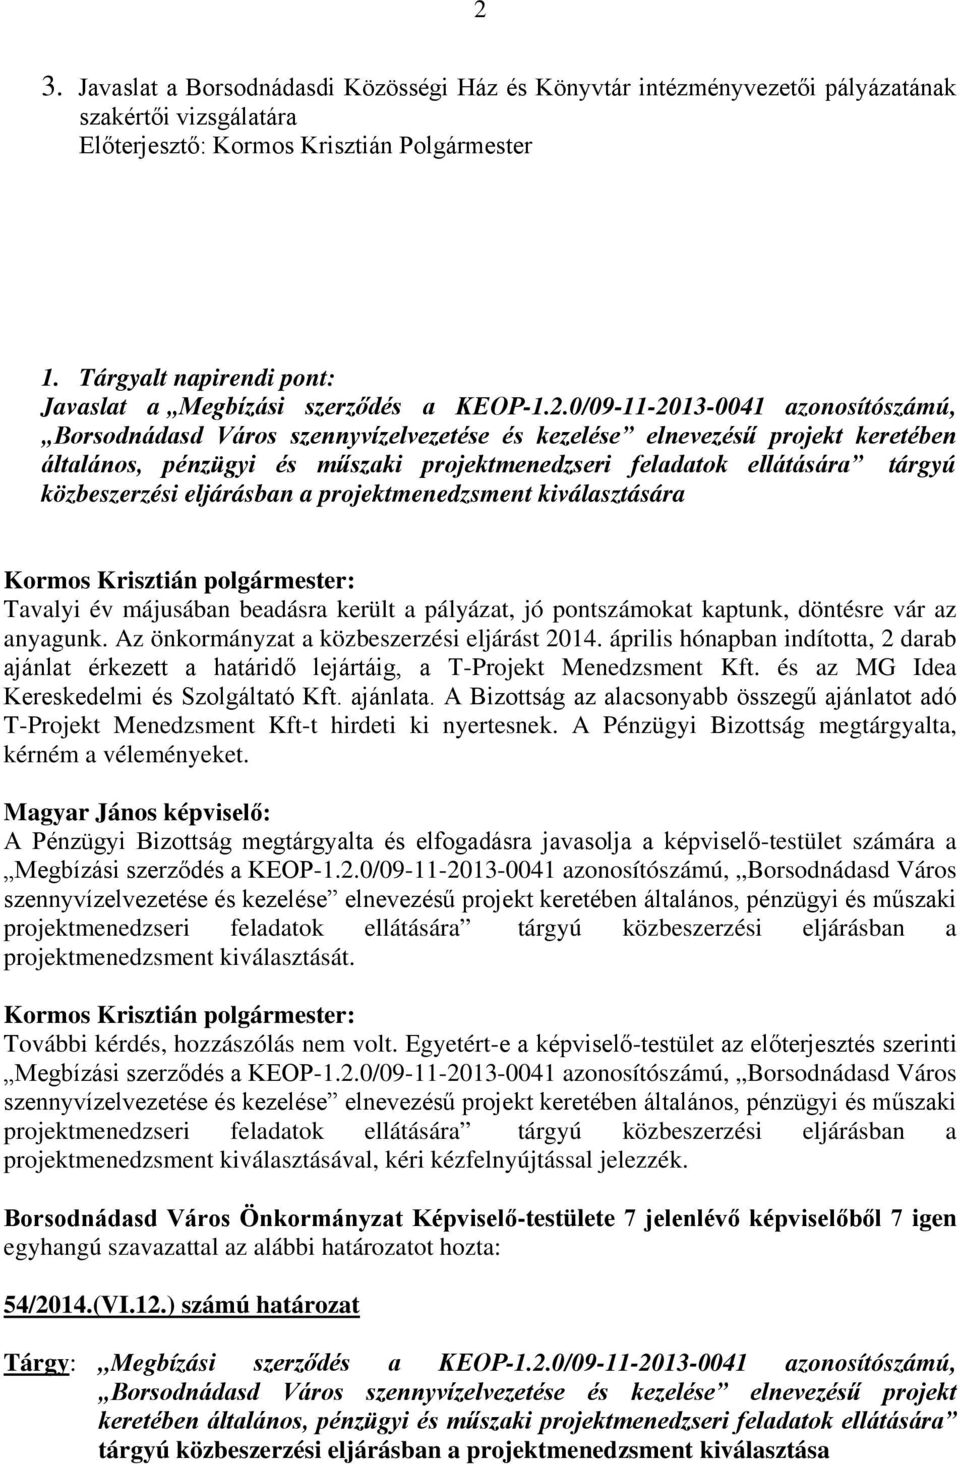 0/09-11-2013-0041 azonosítószámú, Borsodnádasd Város szennyvízelvezetése és kezelése elnevezésű projekt keretében általános, pénzügyi és műszaki projektmenedzseri feladatok ellátására tárgyú